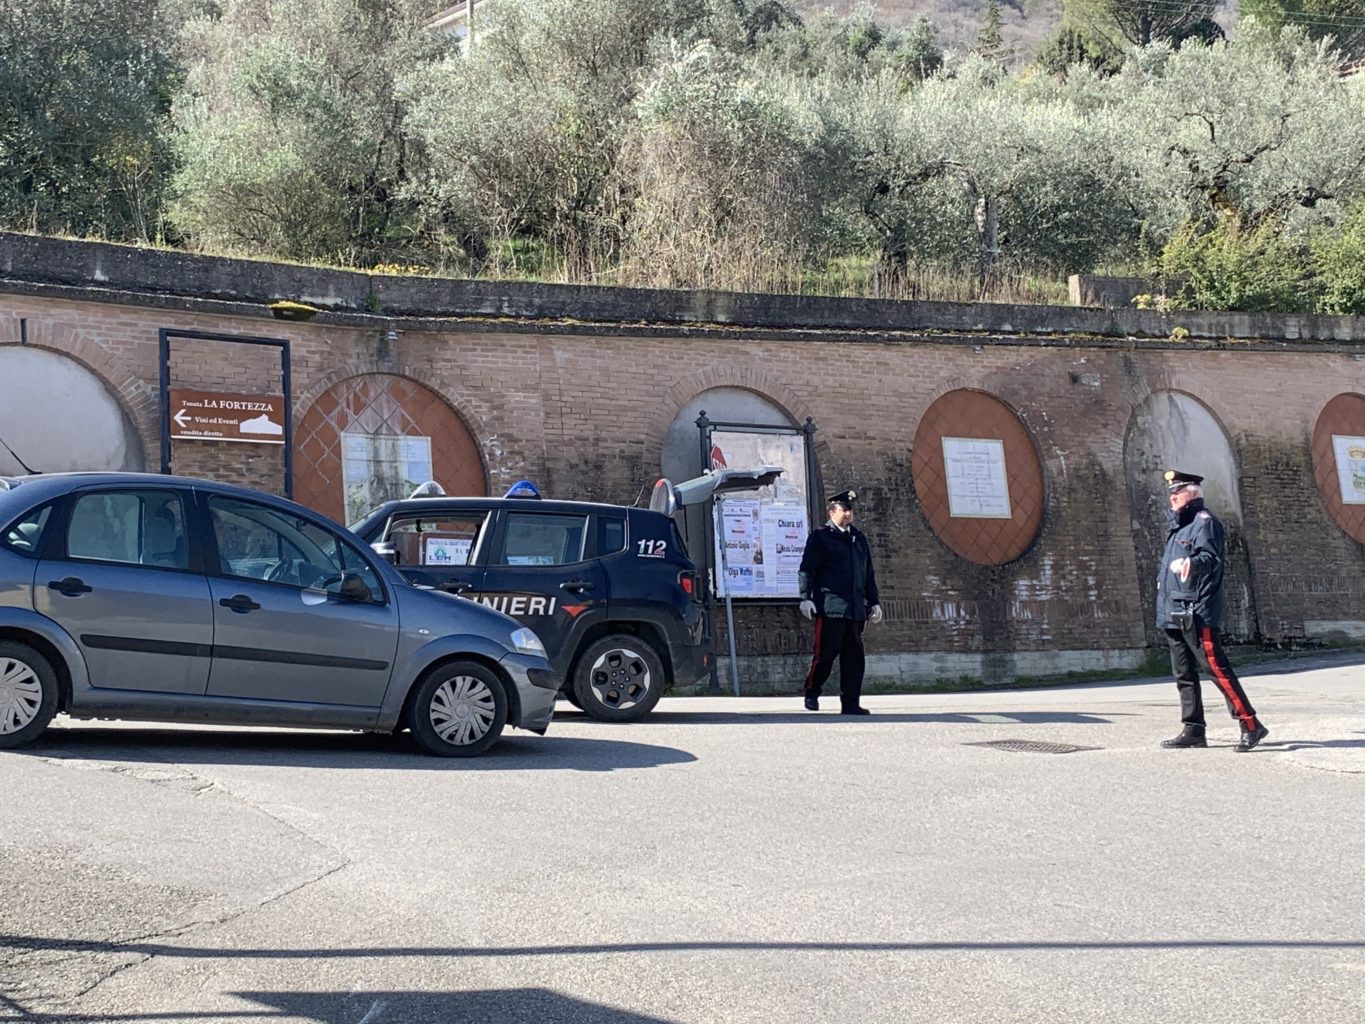 Paupisi| I Carabinieri consegnano farmaco salvavita a uomo ricoverato a Pozzilli